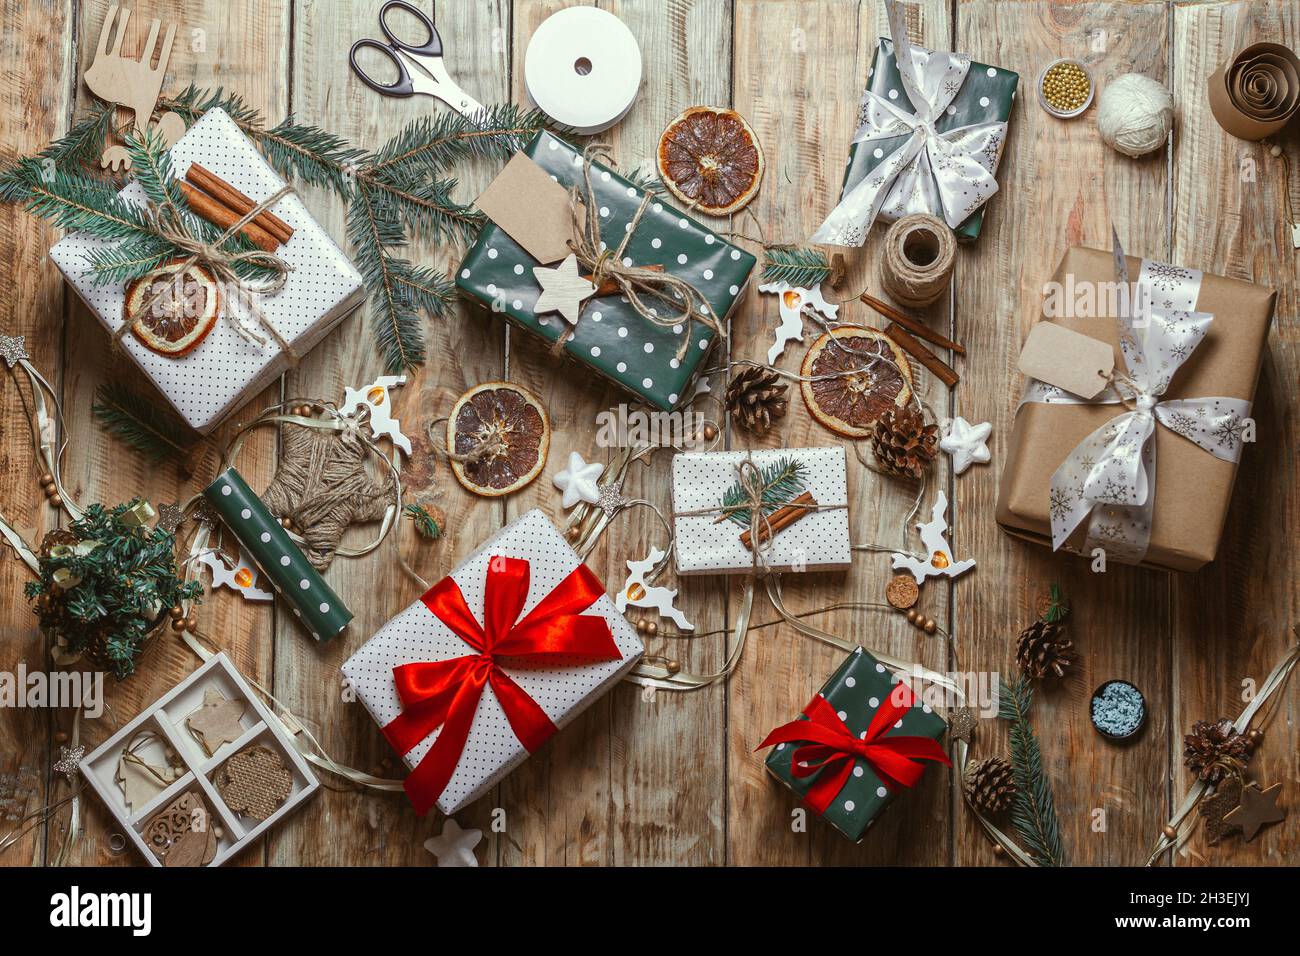 Weihnachts-Accessoires und Neujahr Geschenk auf Holzhintergrund  Stockfotografie - Alamy